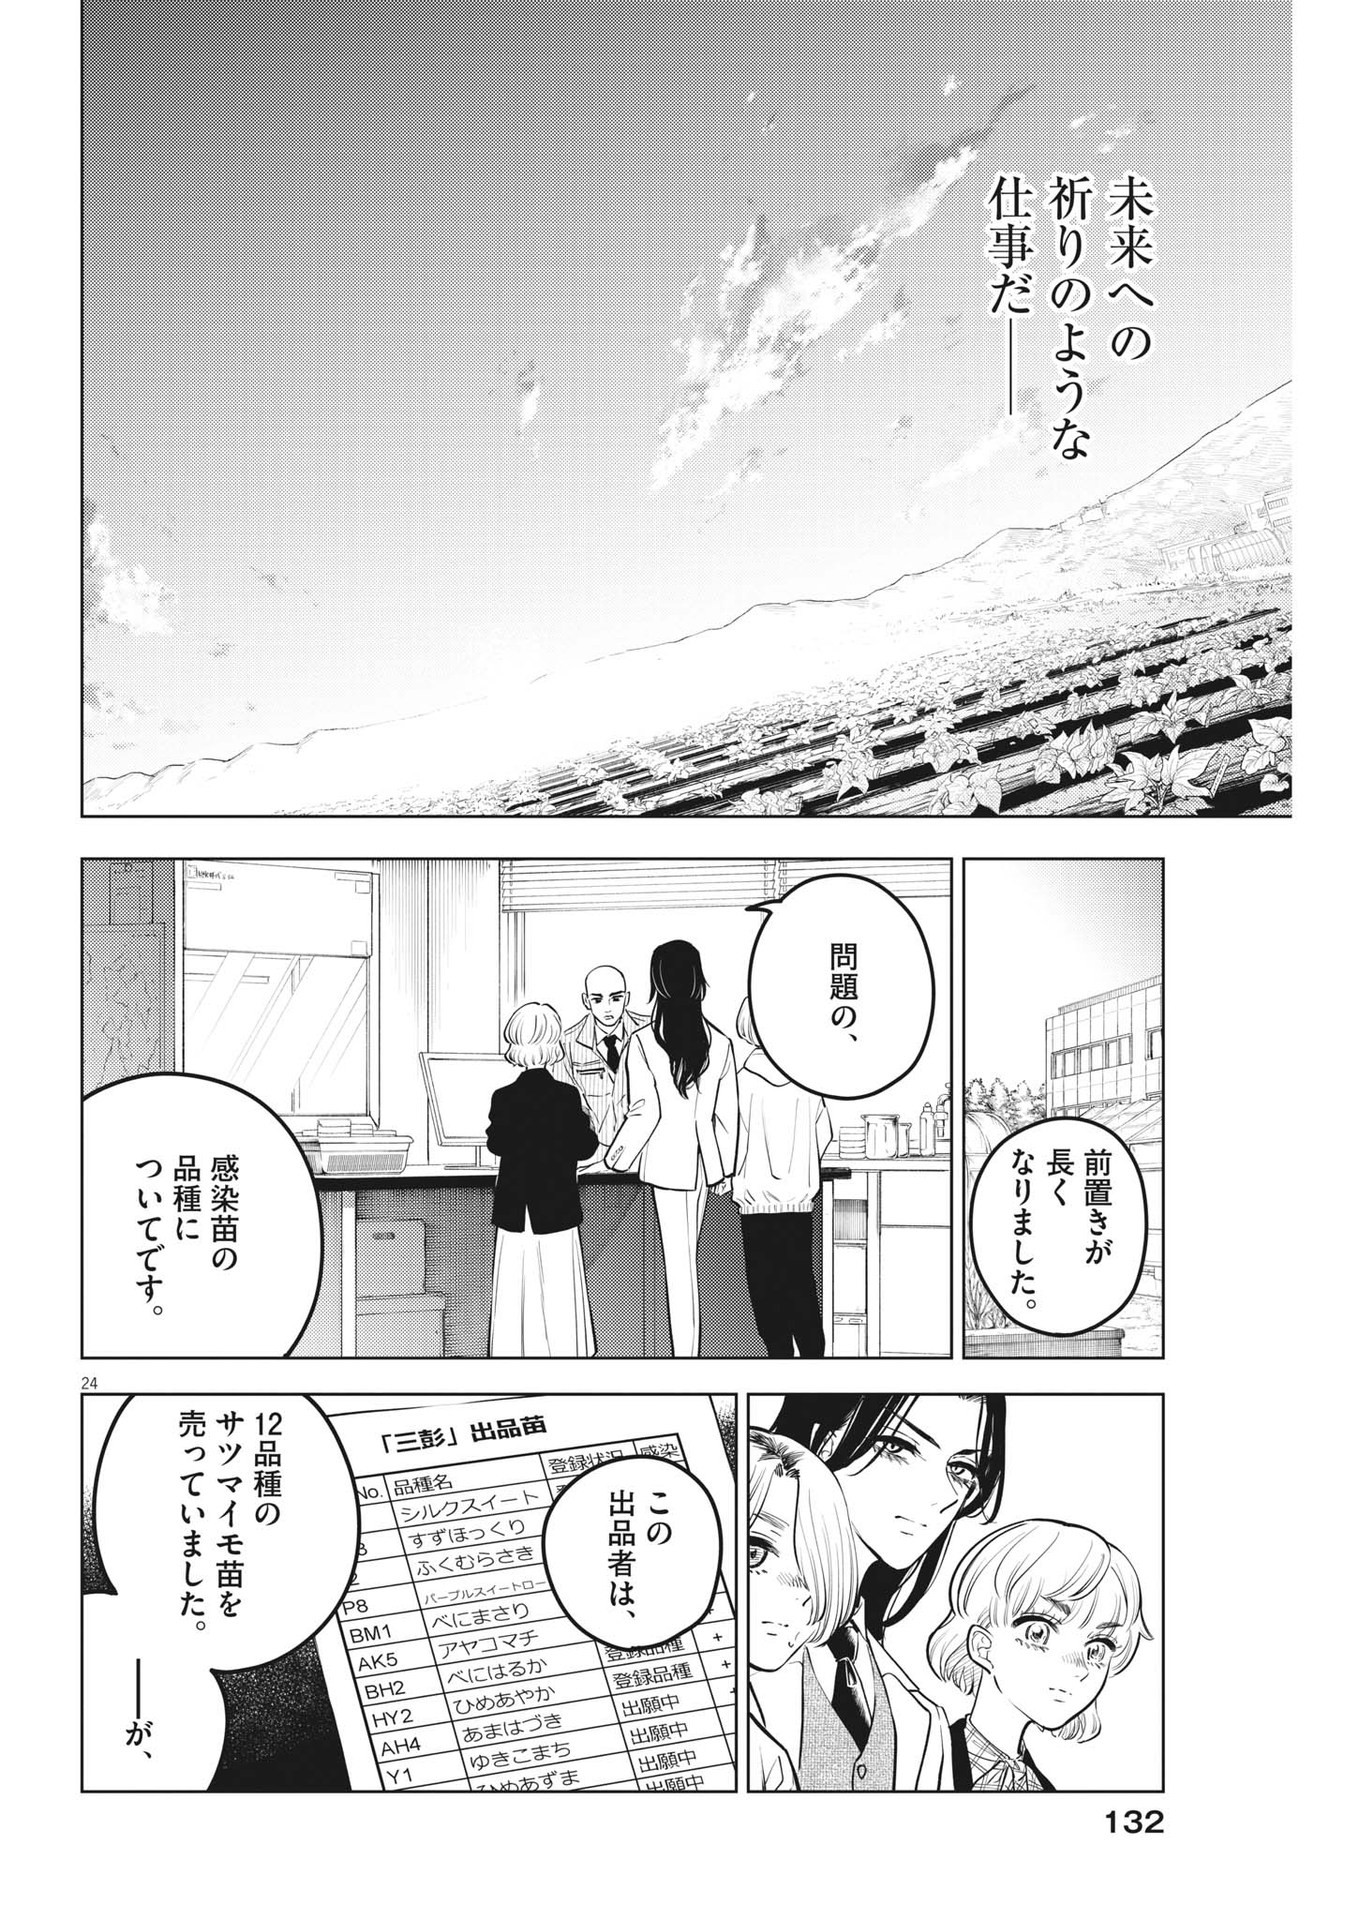 Shokubutsu Byourigaku wa Ashita no Kimi o Negau - Chapter 18 - Page 24